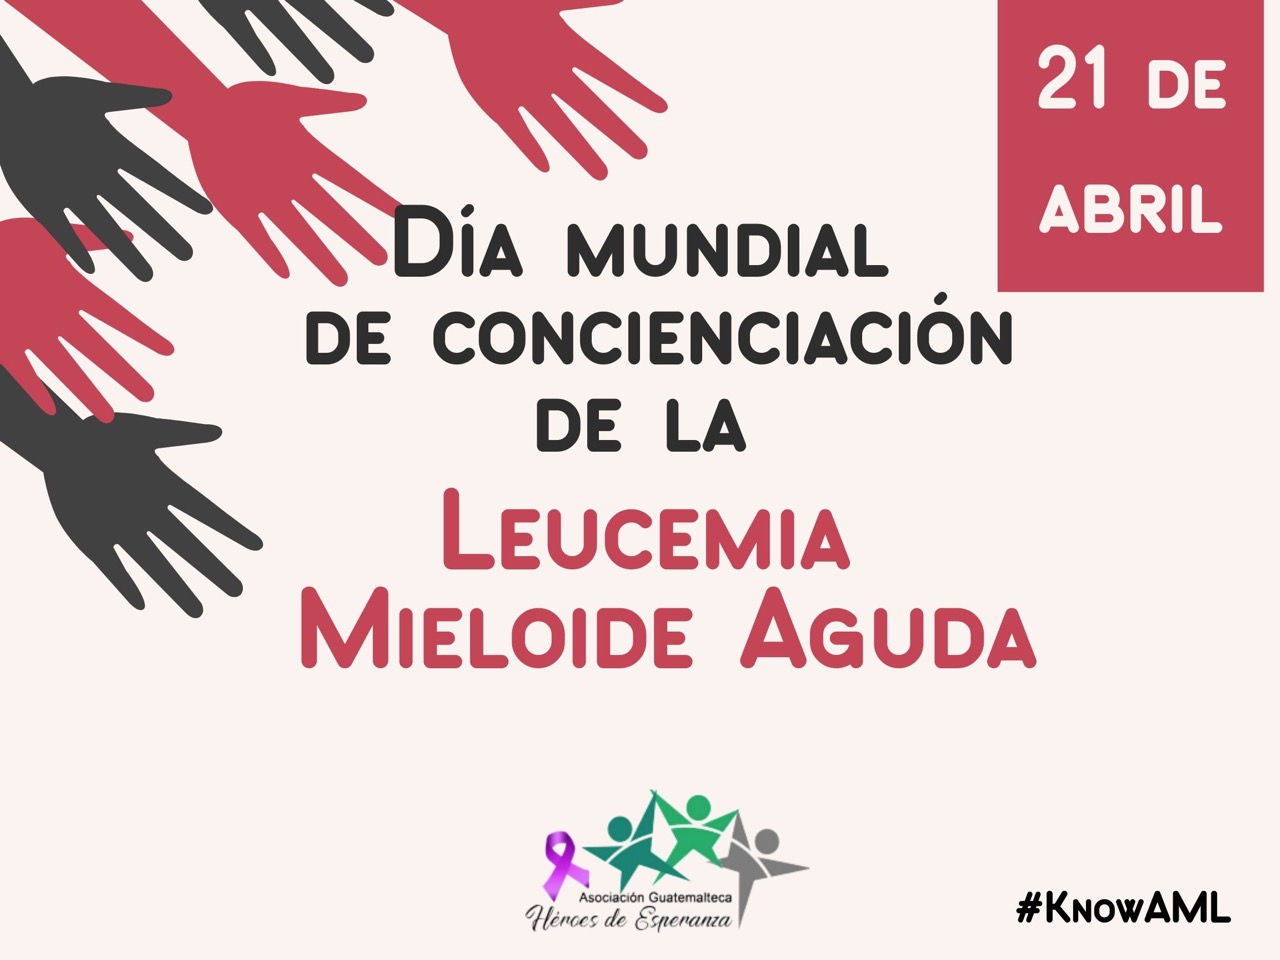 Asociación Guatemalteca Héroes de Esperanza Conmemora el día Mundial de Concientización de la Leucemia mieloide aguda